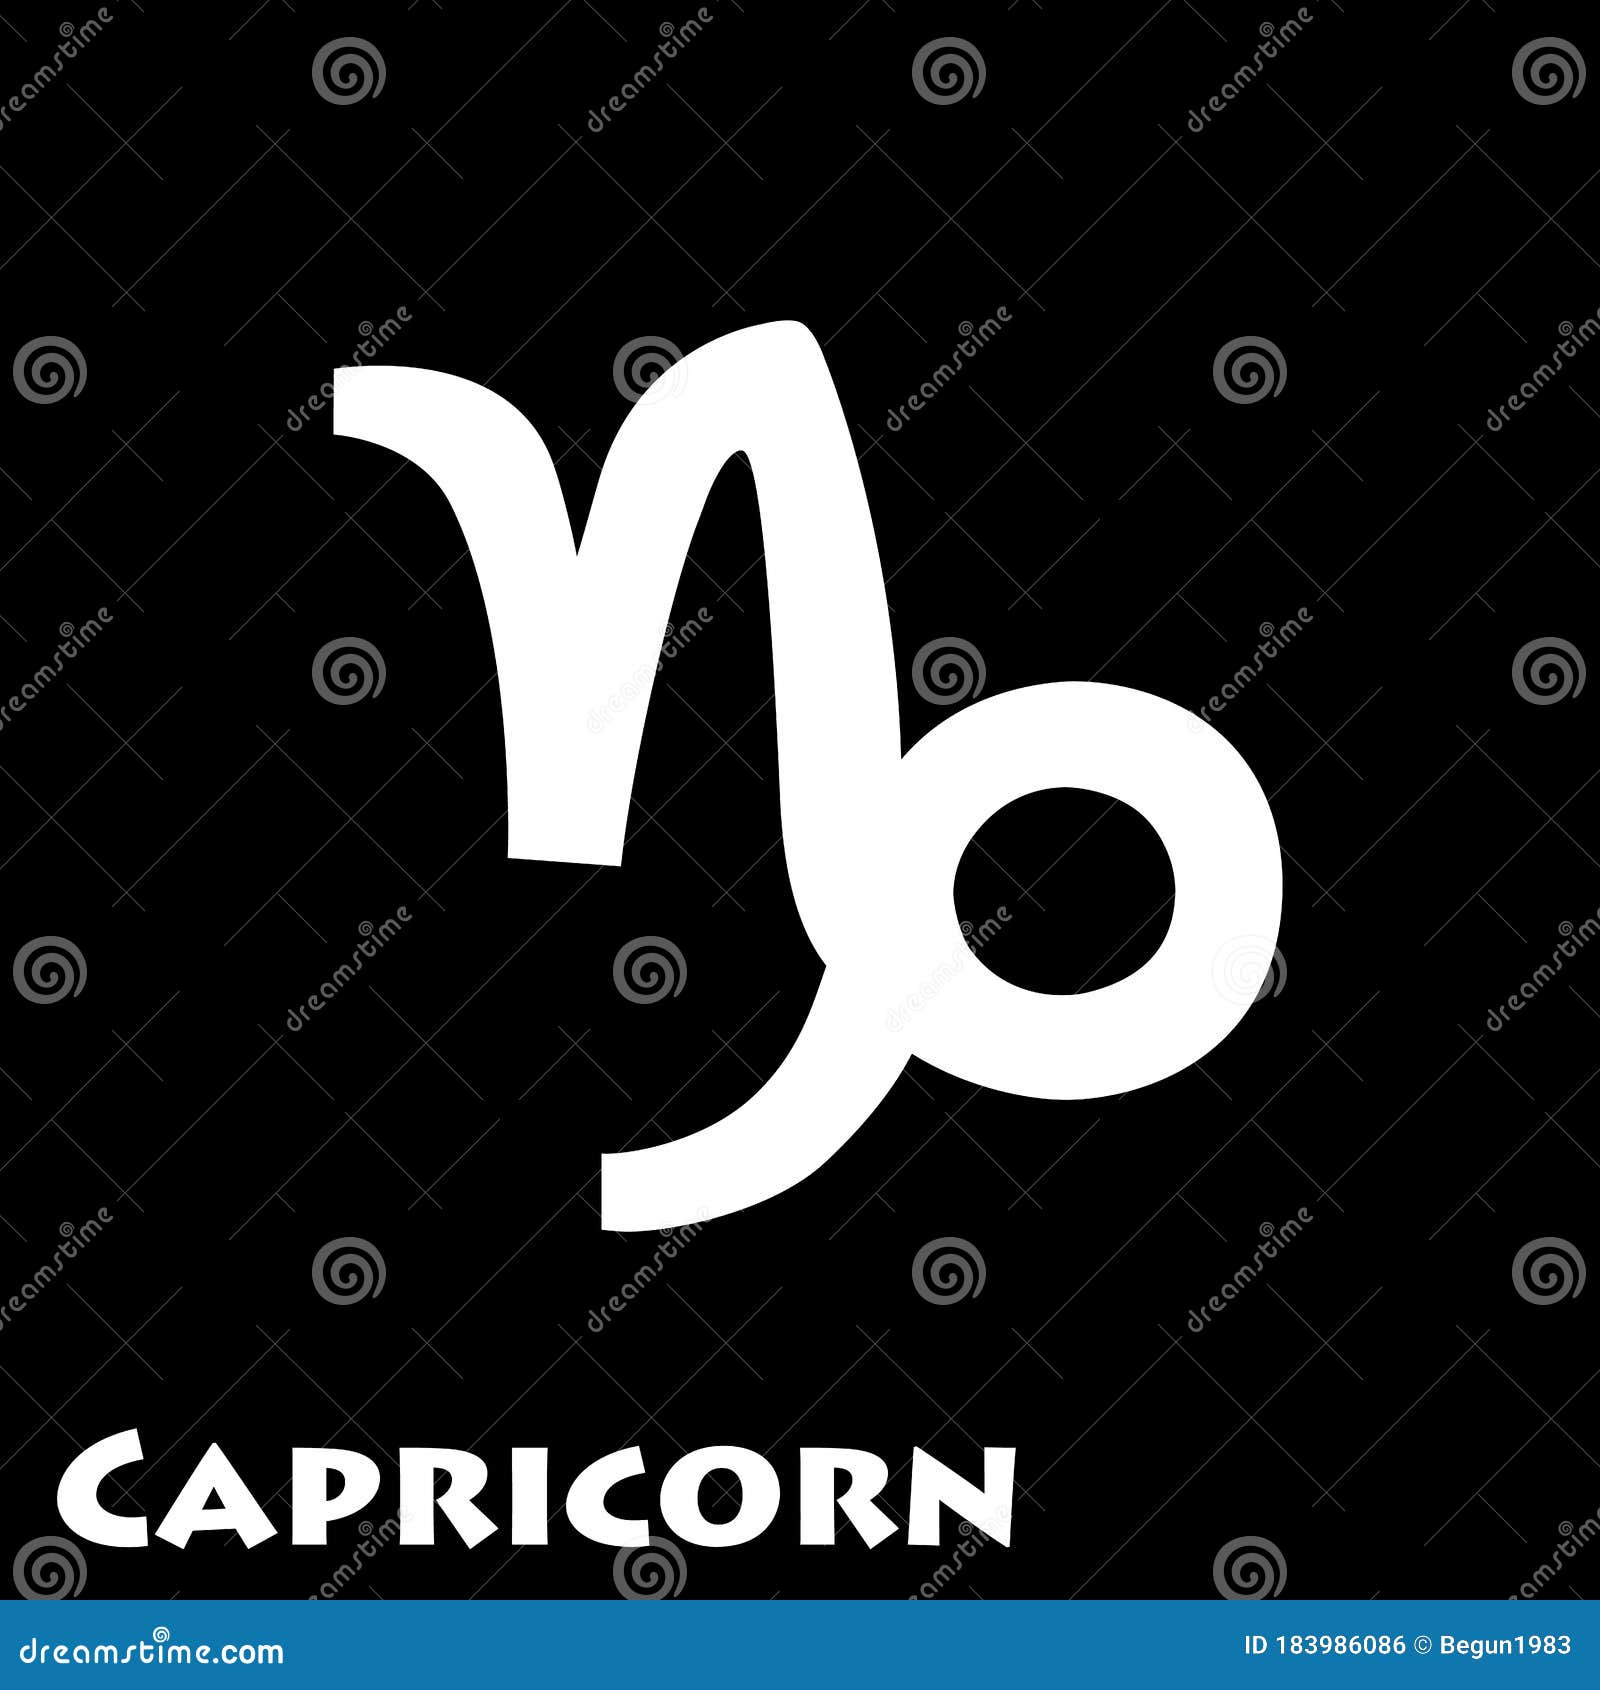 Logo of the Zodiac Sign Capricorn in a Vector Stock Vector ...